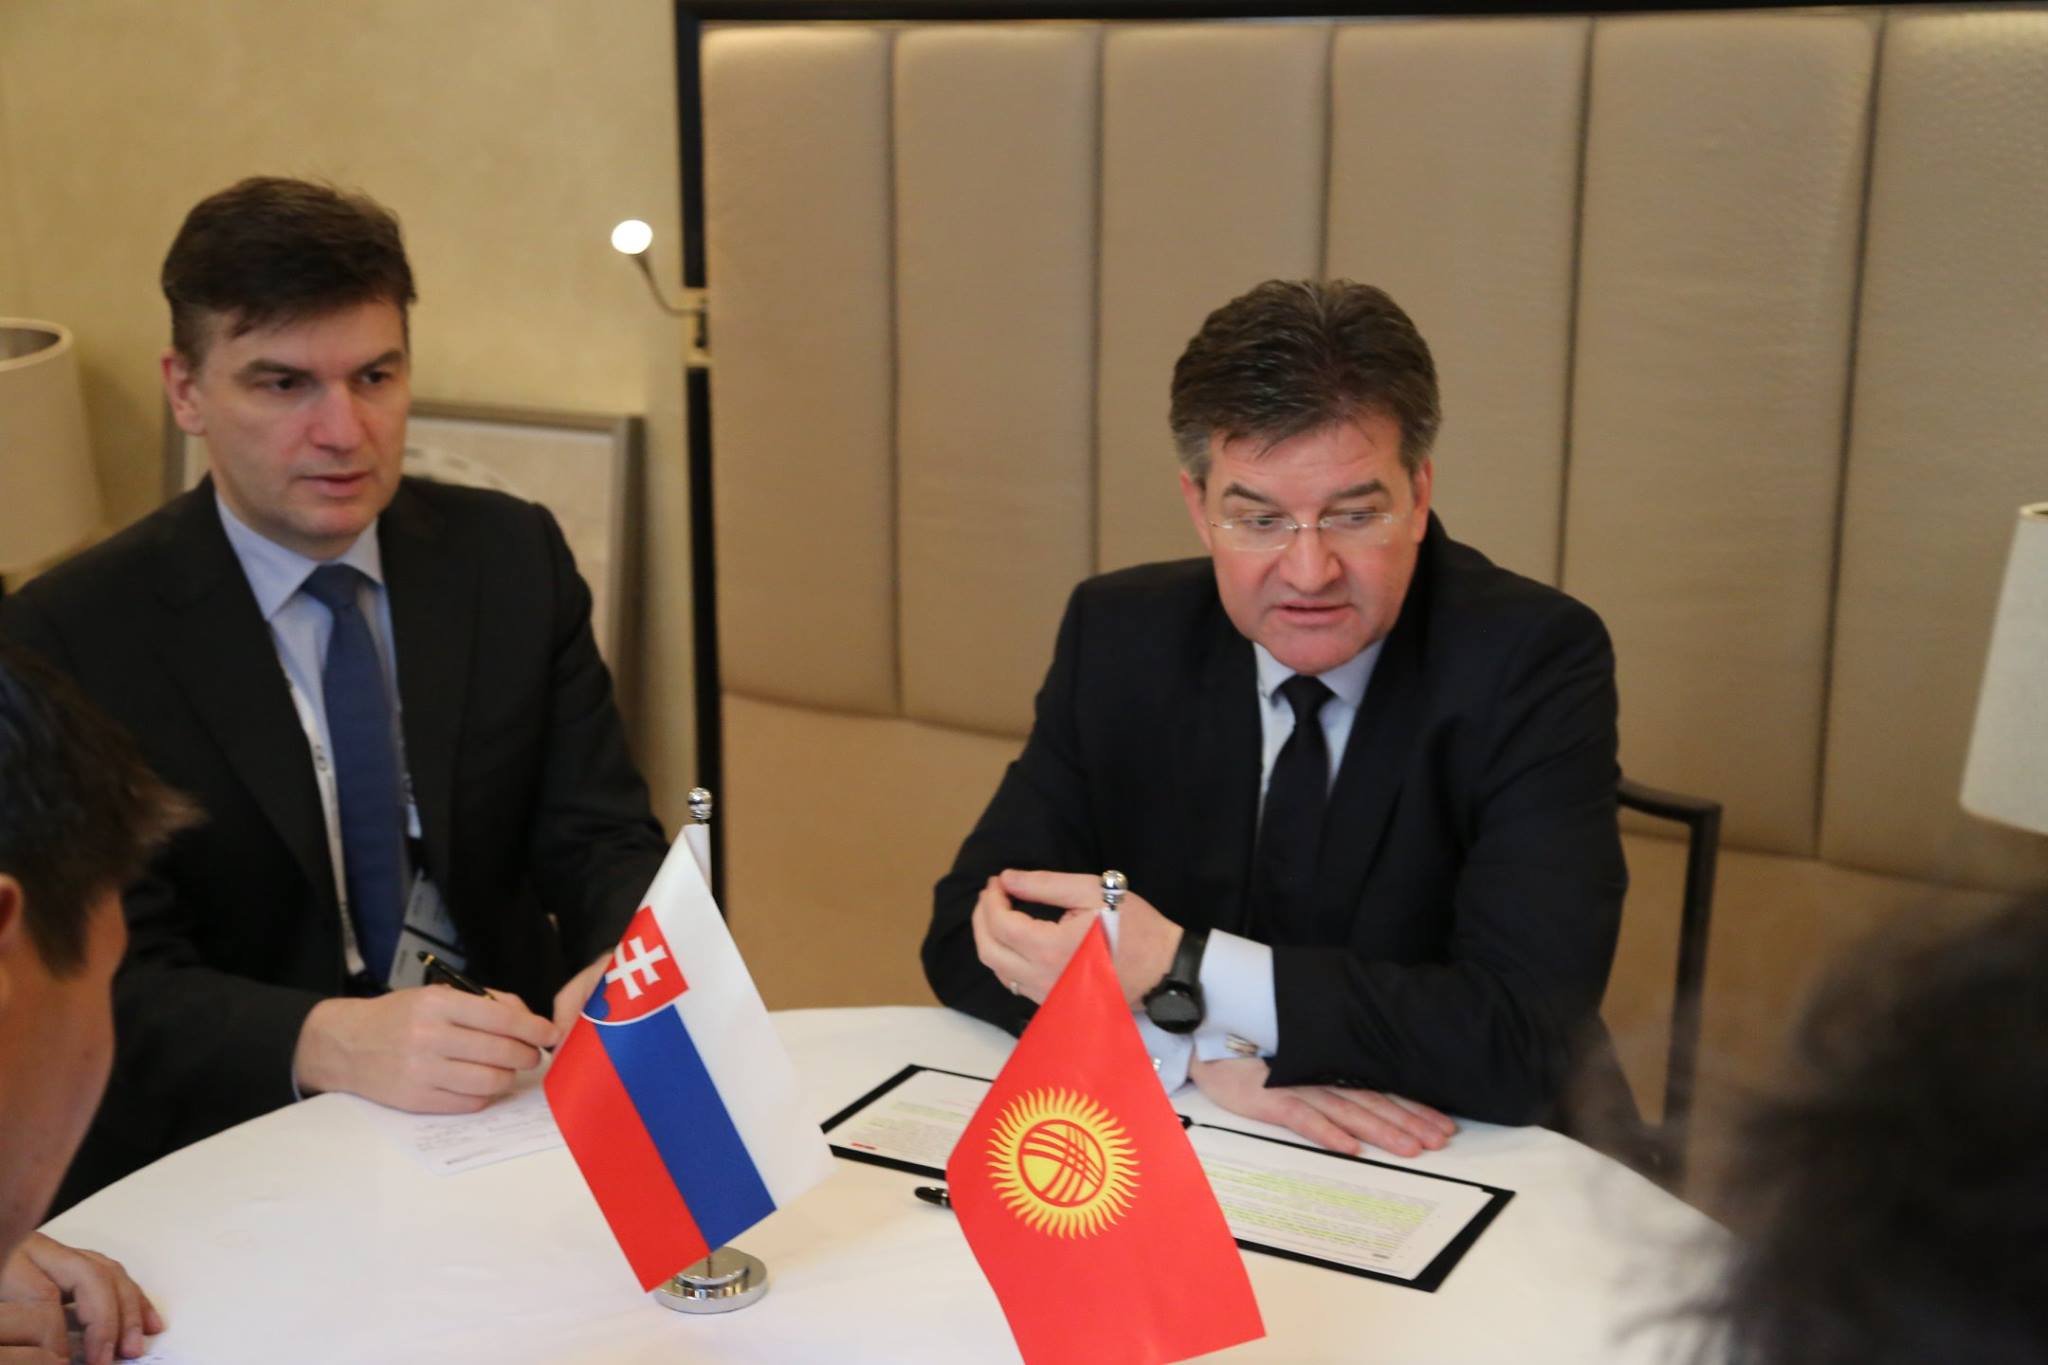 Министр Чингиз Айдарбеков пригласил господина Мирослава Лайчака в первом полугодии 2019 года посетить Кыргызстан с визитом.